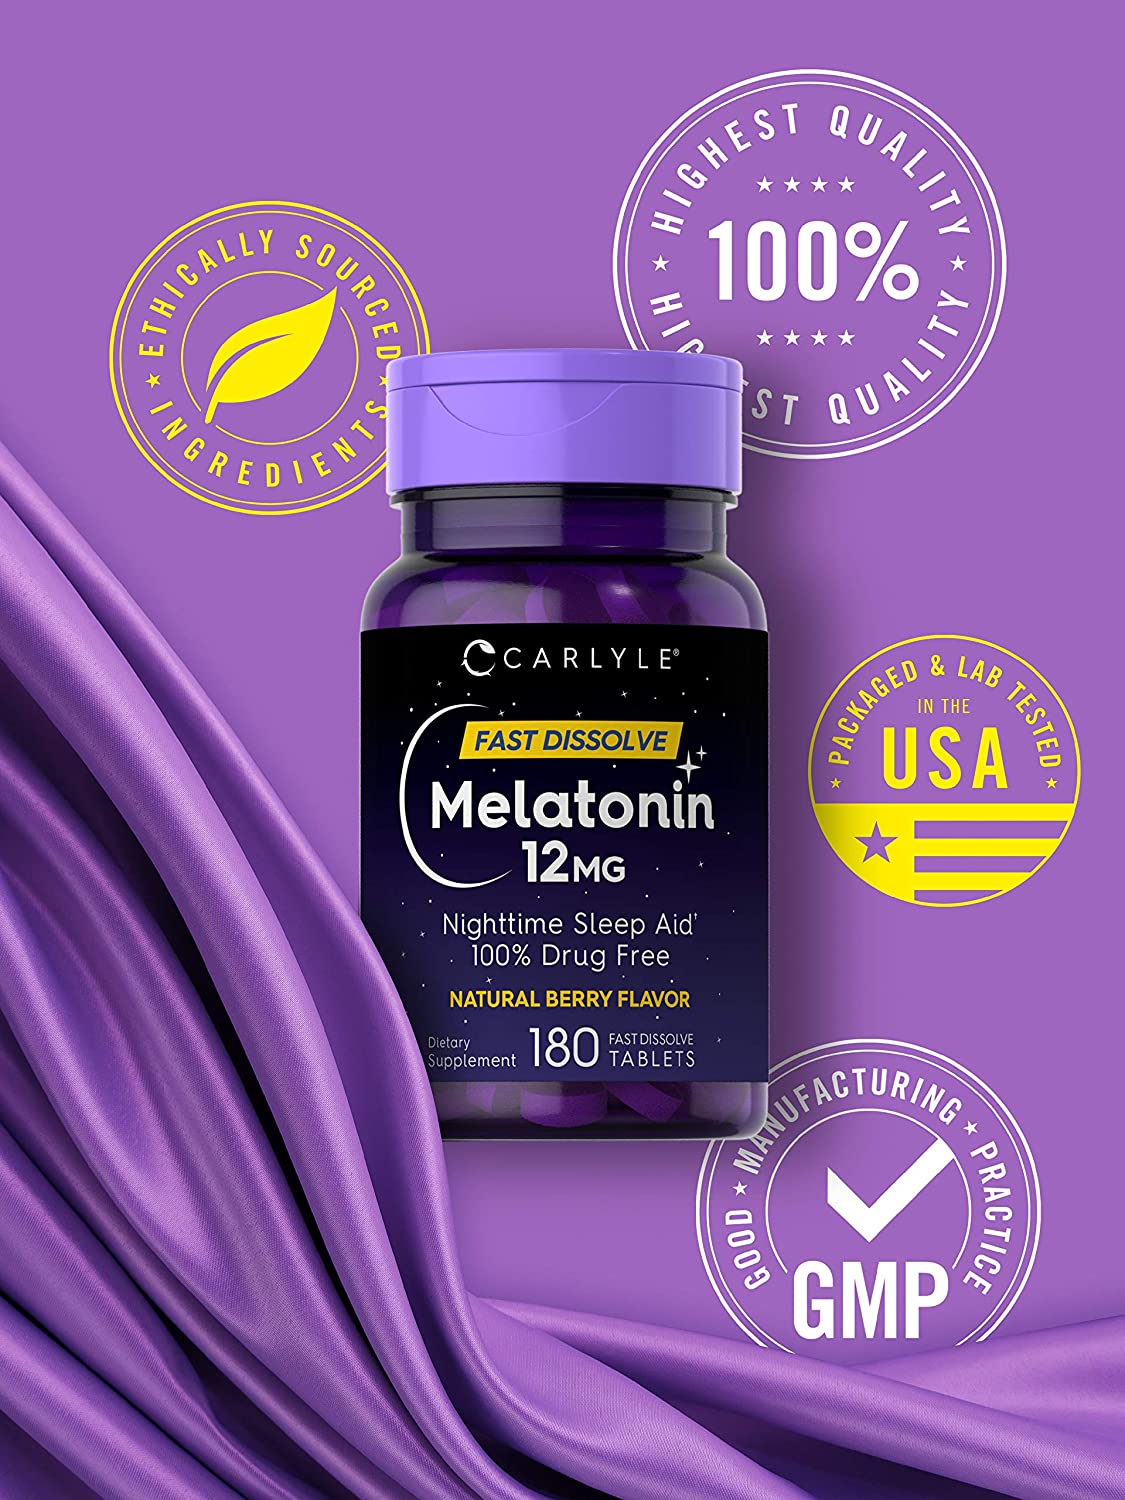 Carlyle Melato_nina 12 mg Disolución Rápida 180 Tabs | Ayuda para Sueño Nocturno - Grancarpa.com.mx